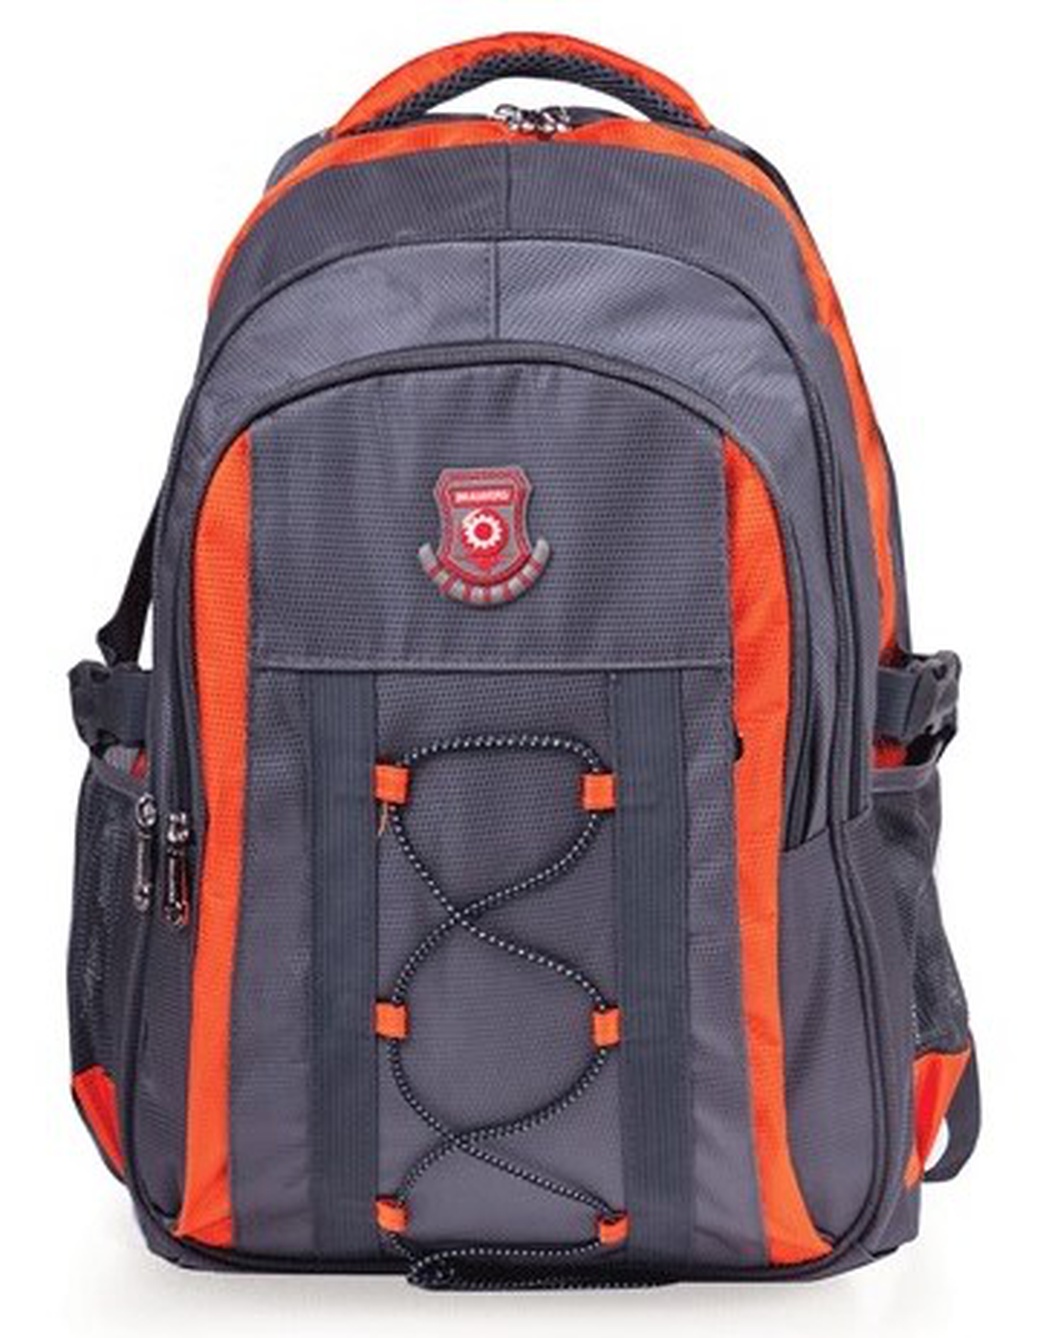 Рюкзак для школы и офиса Brauberg SpeedWay 1, 46*32*19см, 25 л, серо-оранжевый фото